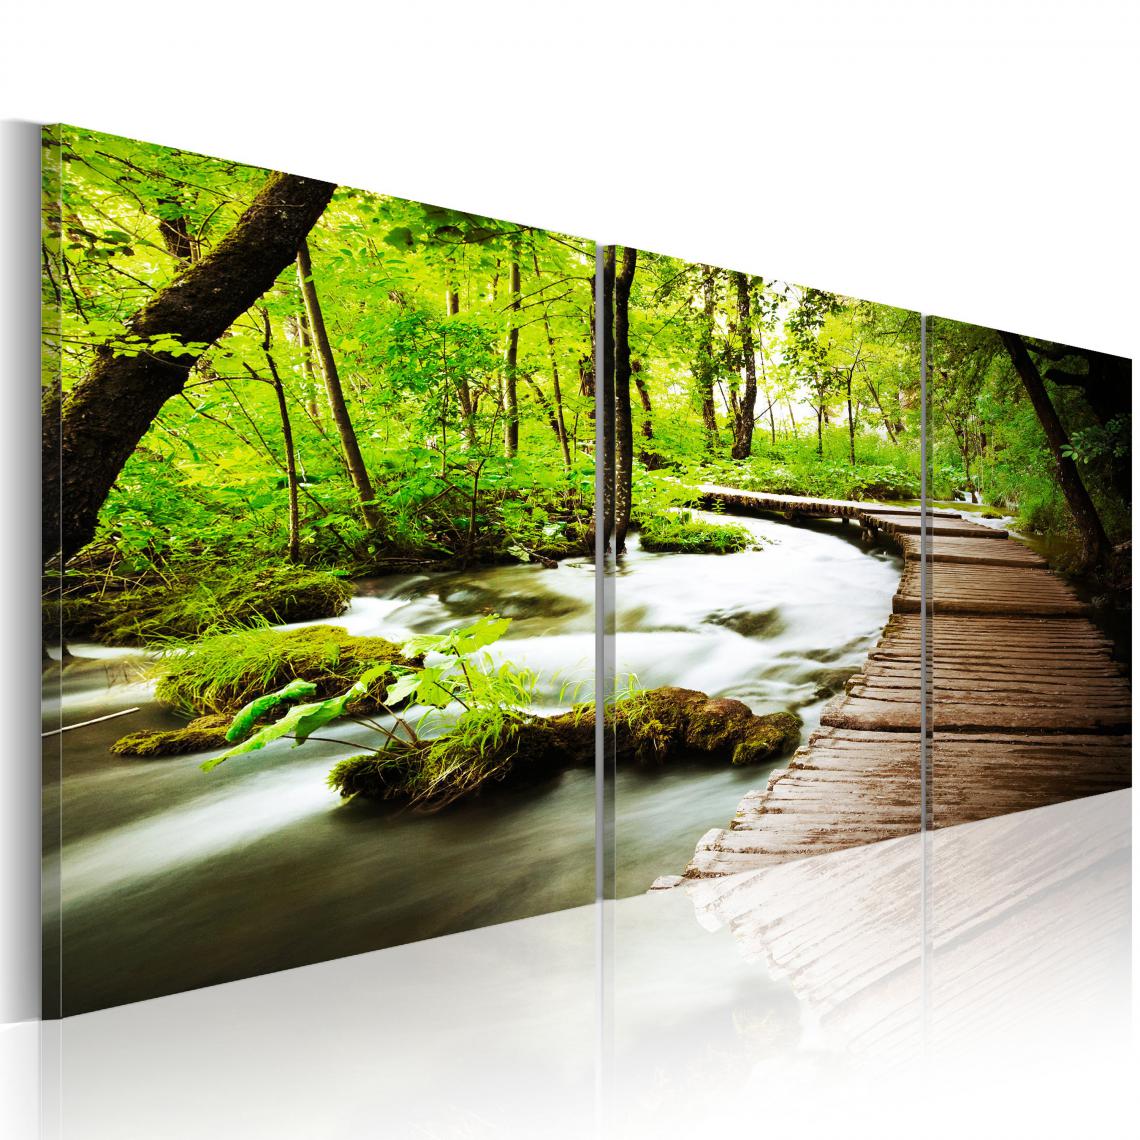 Decoshop26 - Tableau sur toile en 3 panneaux décoration murale image imprimée cadre en bois à suspendre Ruisseau forestier 90x30 cm 11_0006173 - Tableaux, peintures